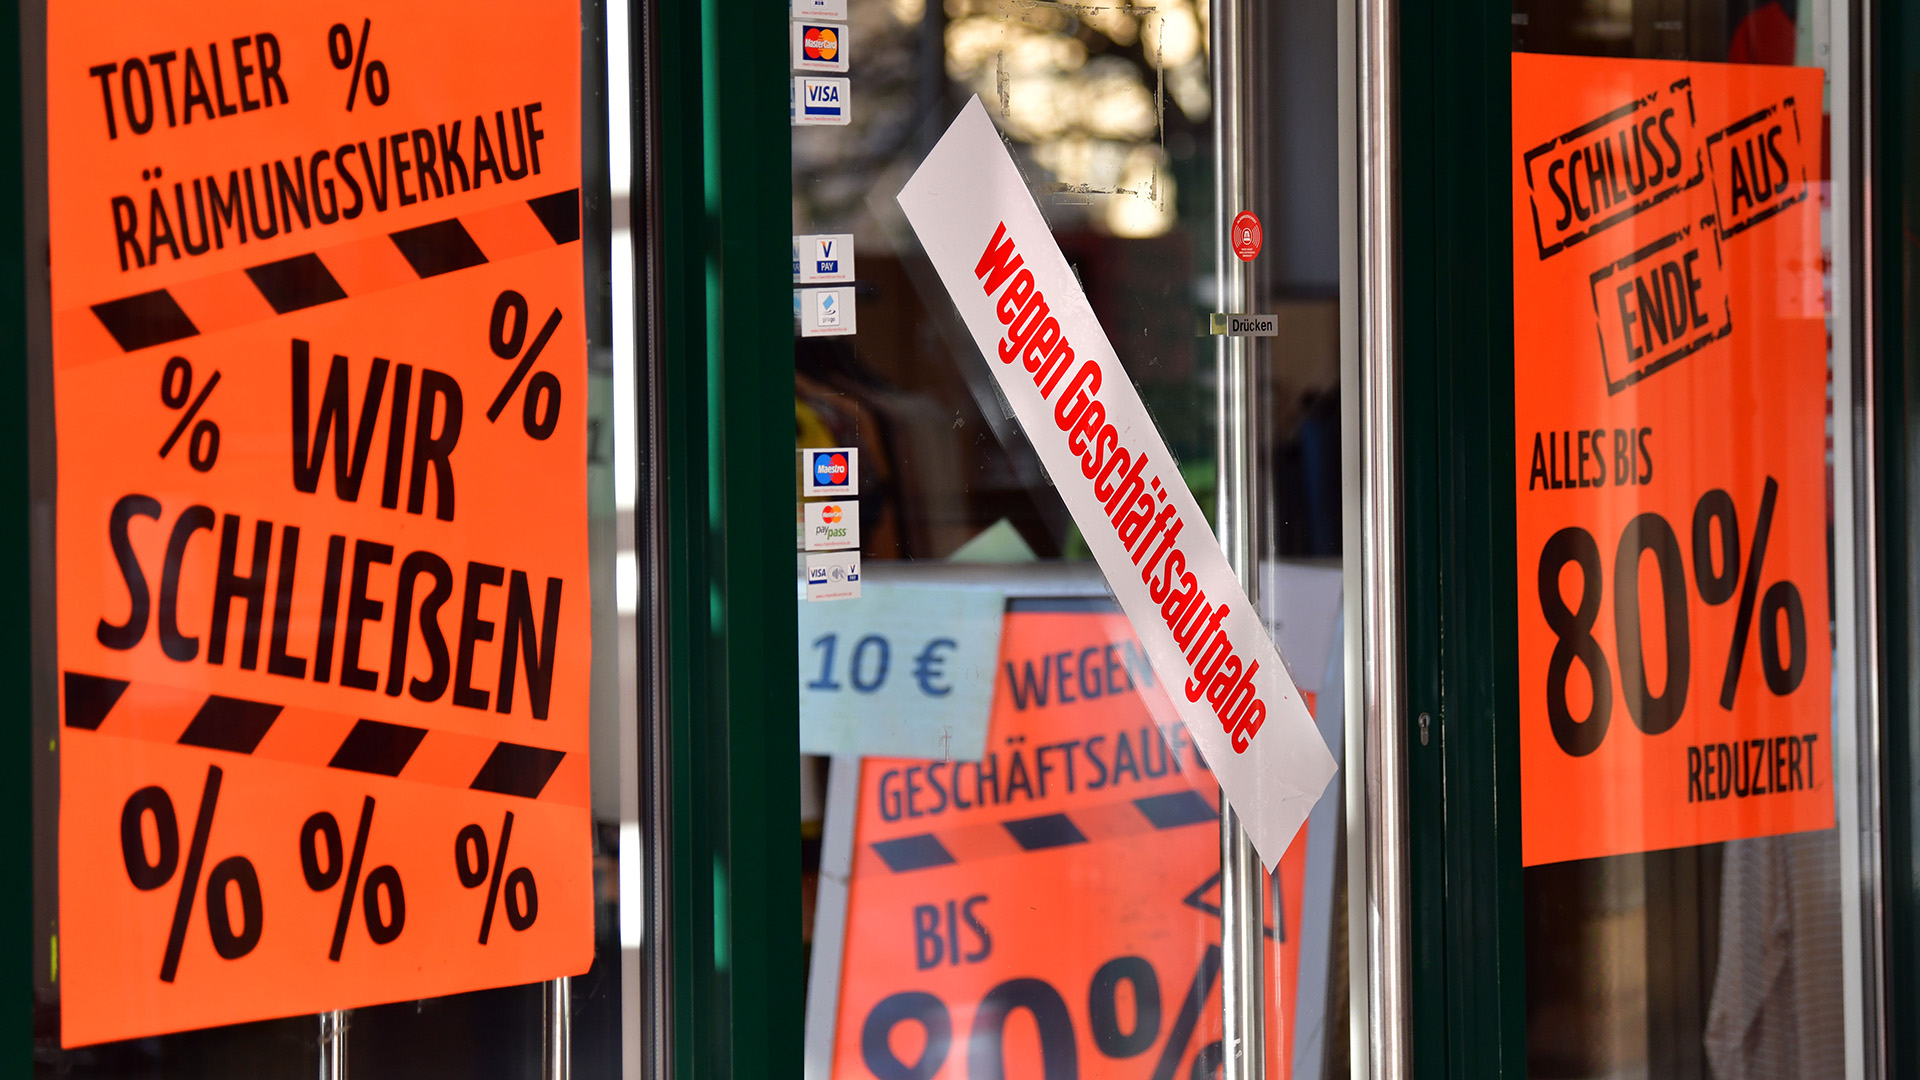 "Wegen Geschäftsaufgabe» steht auf dem Aufkleber an der Tür eines Geschäfts in einer Innenstadt | dpa